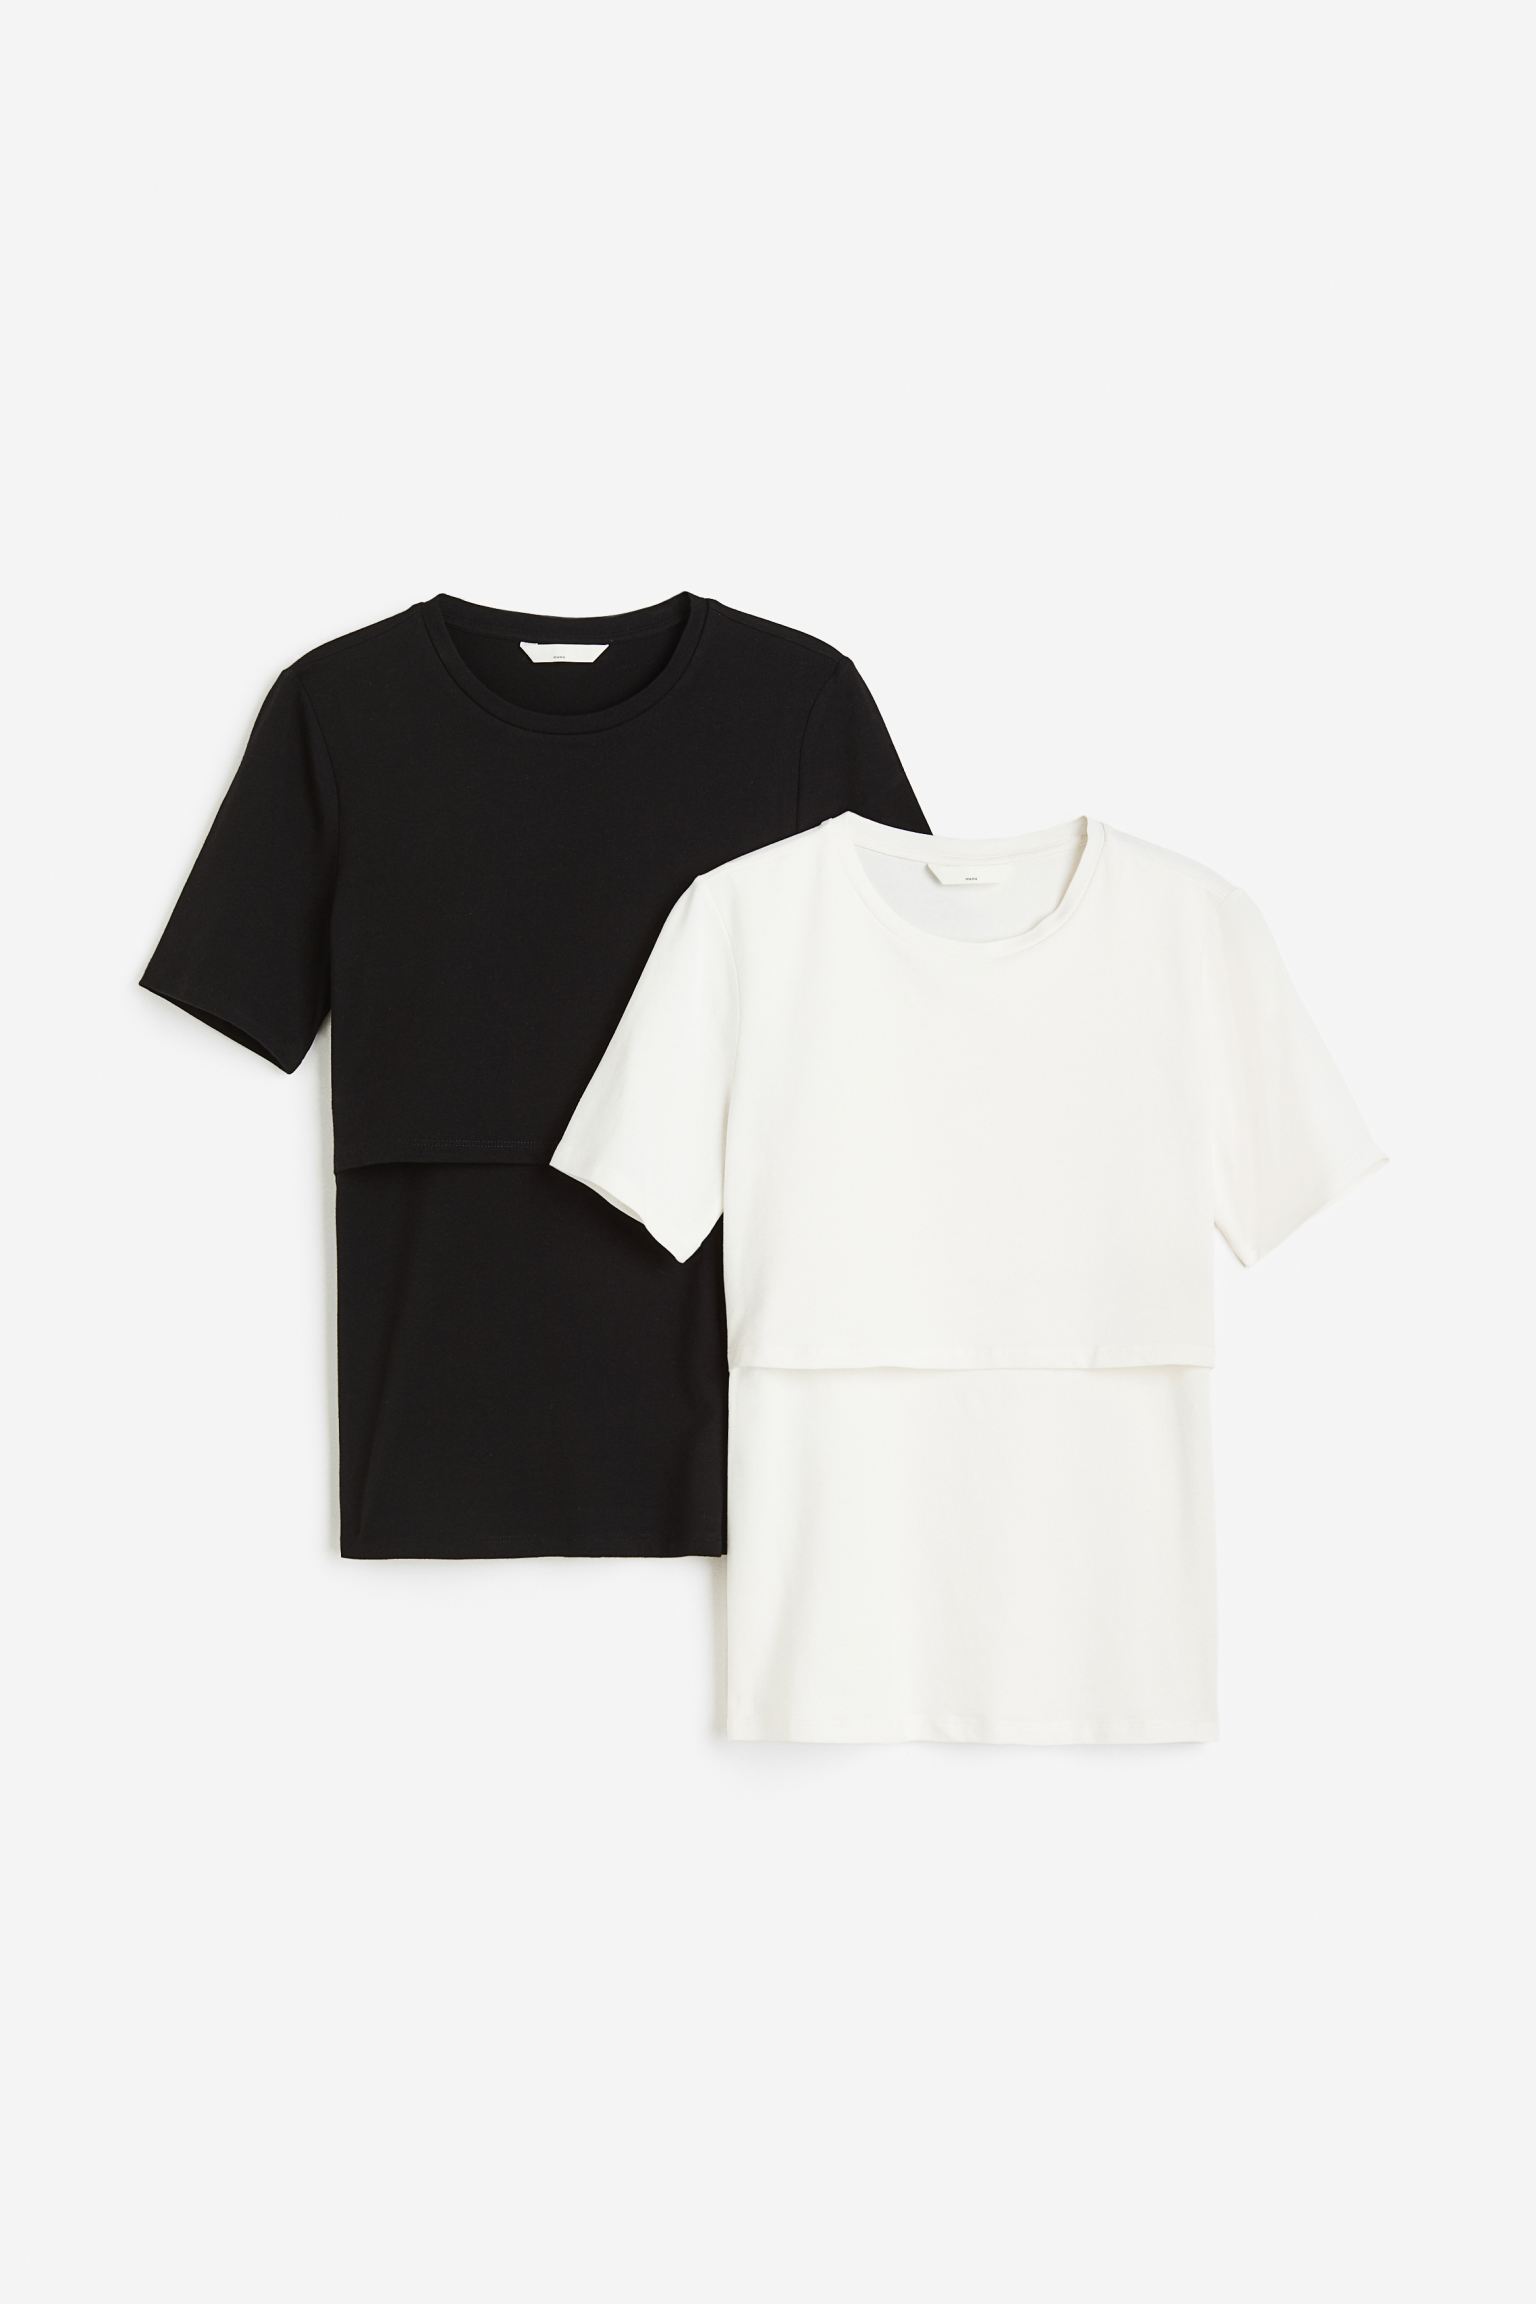 Комплект футболок женских H&M 1175052002 черных M (доставка из-за рубежа)